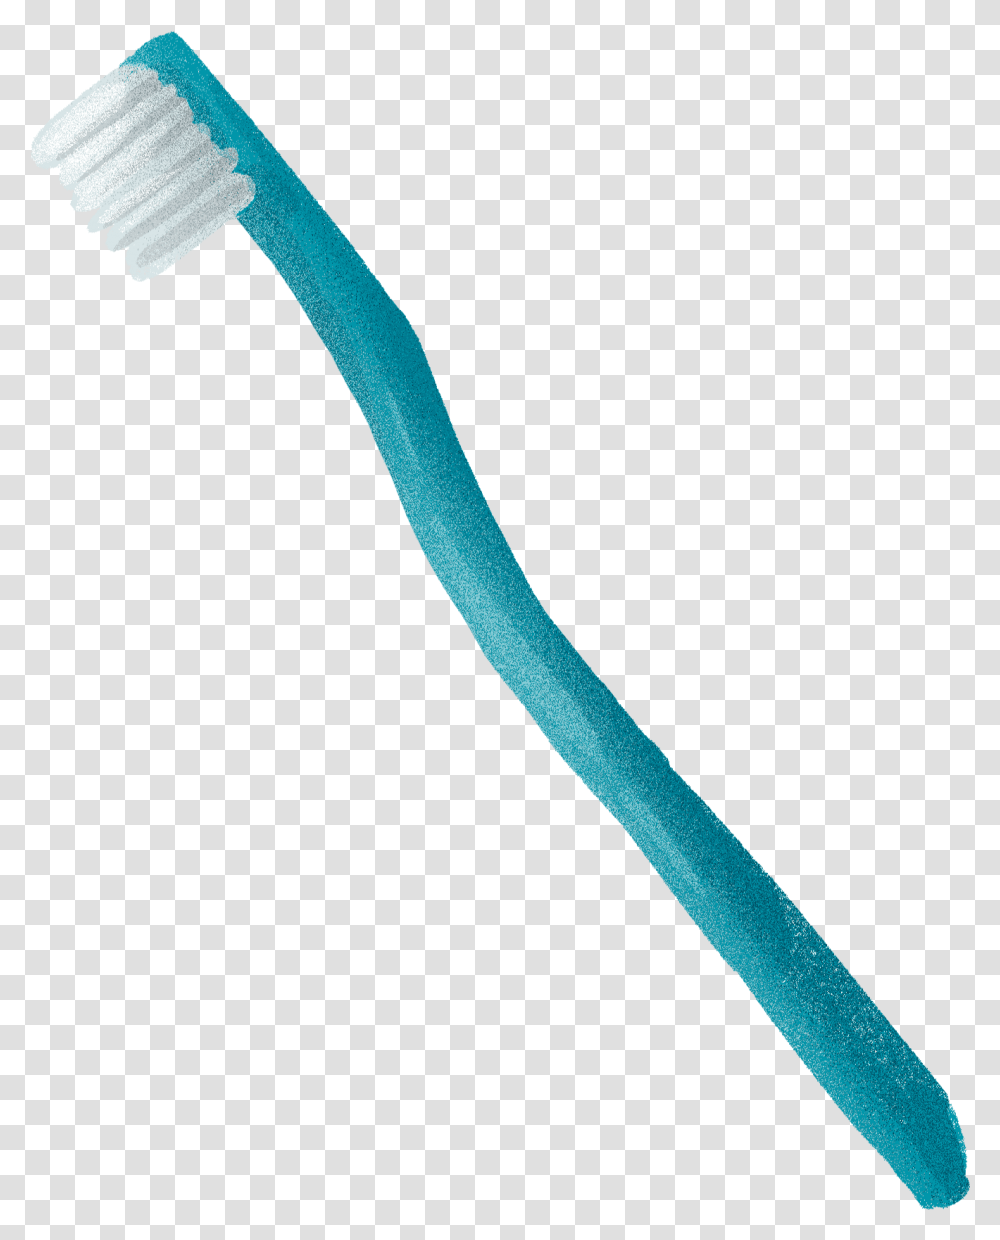 Toothbrush Cartoon Toothbrush, Tool, Axe, Sword, Blade Transparent Png